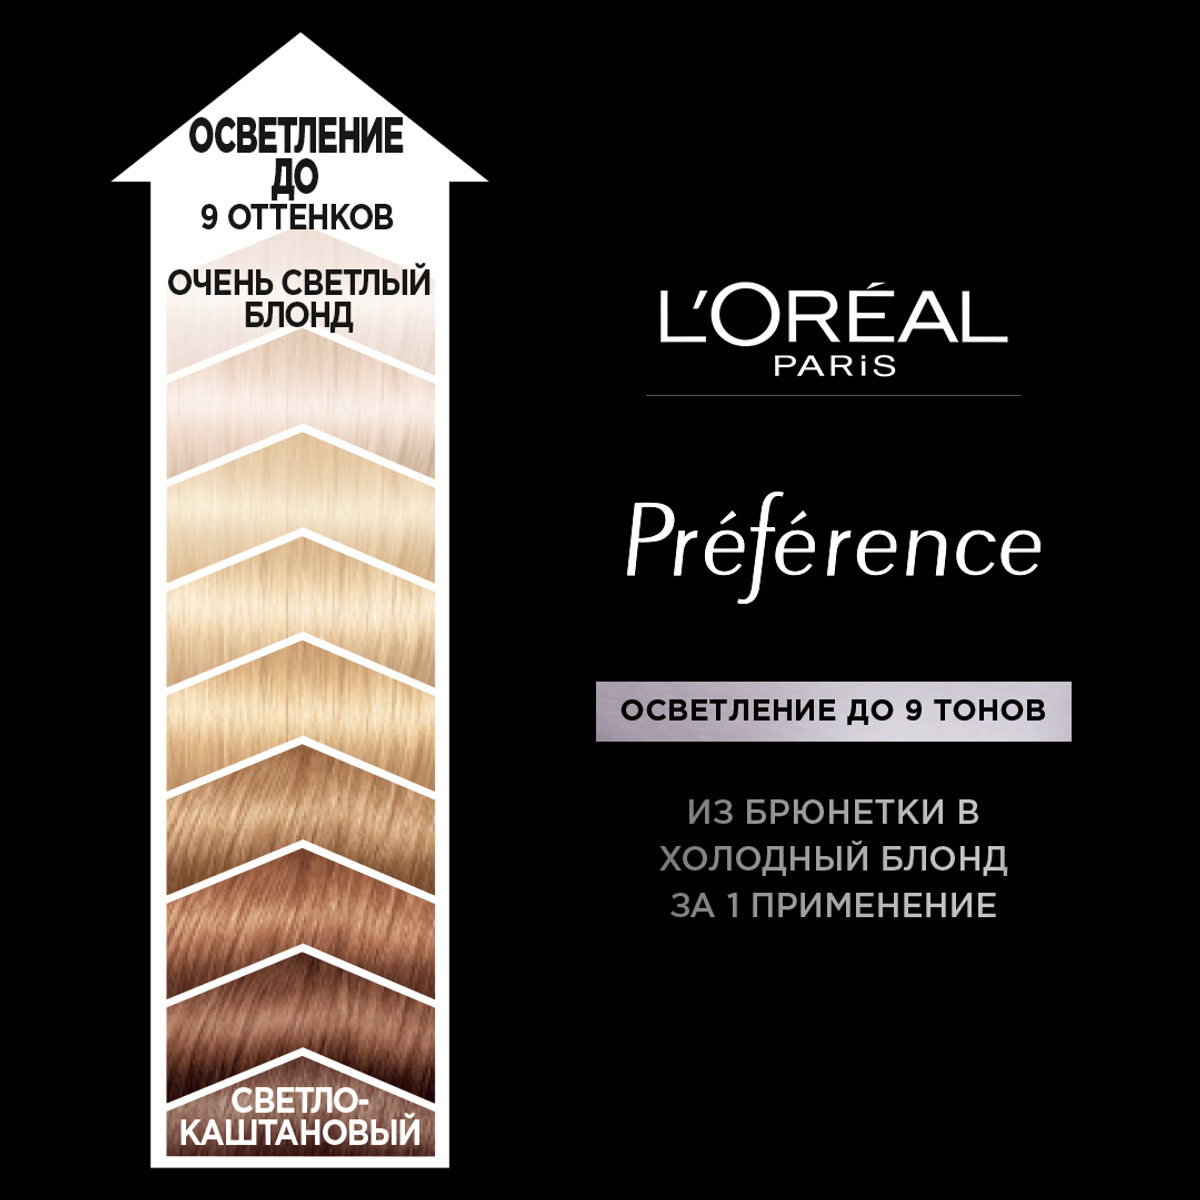 Осветлитель L'Oréal Paris «Préférence», осветляет до 9 тонов, ультра-платиновый блонд L'Oreal Paris - фото №4